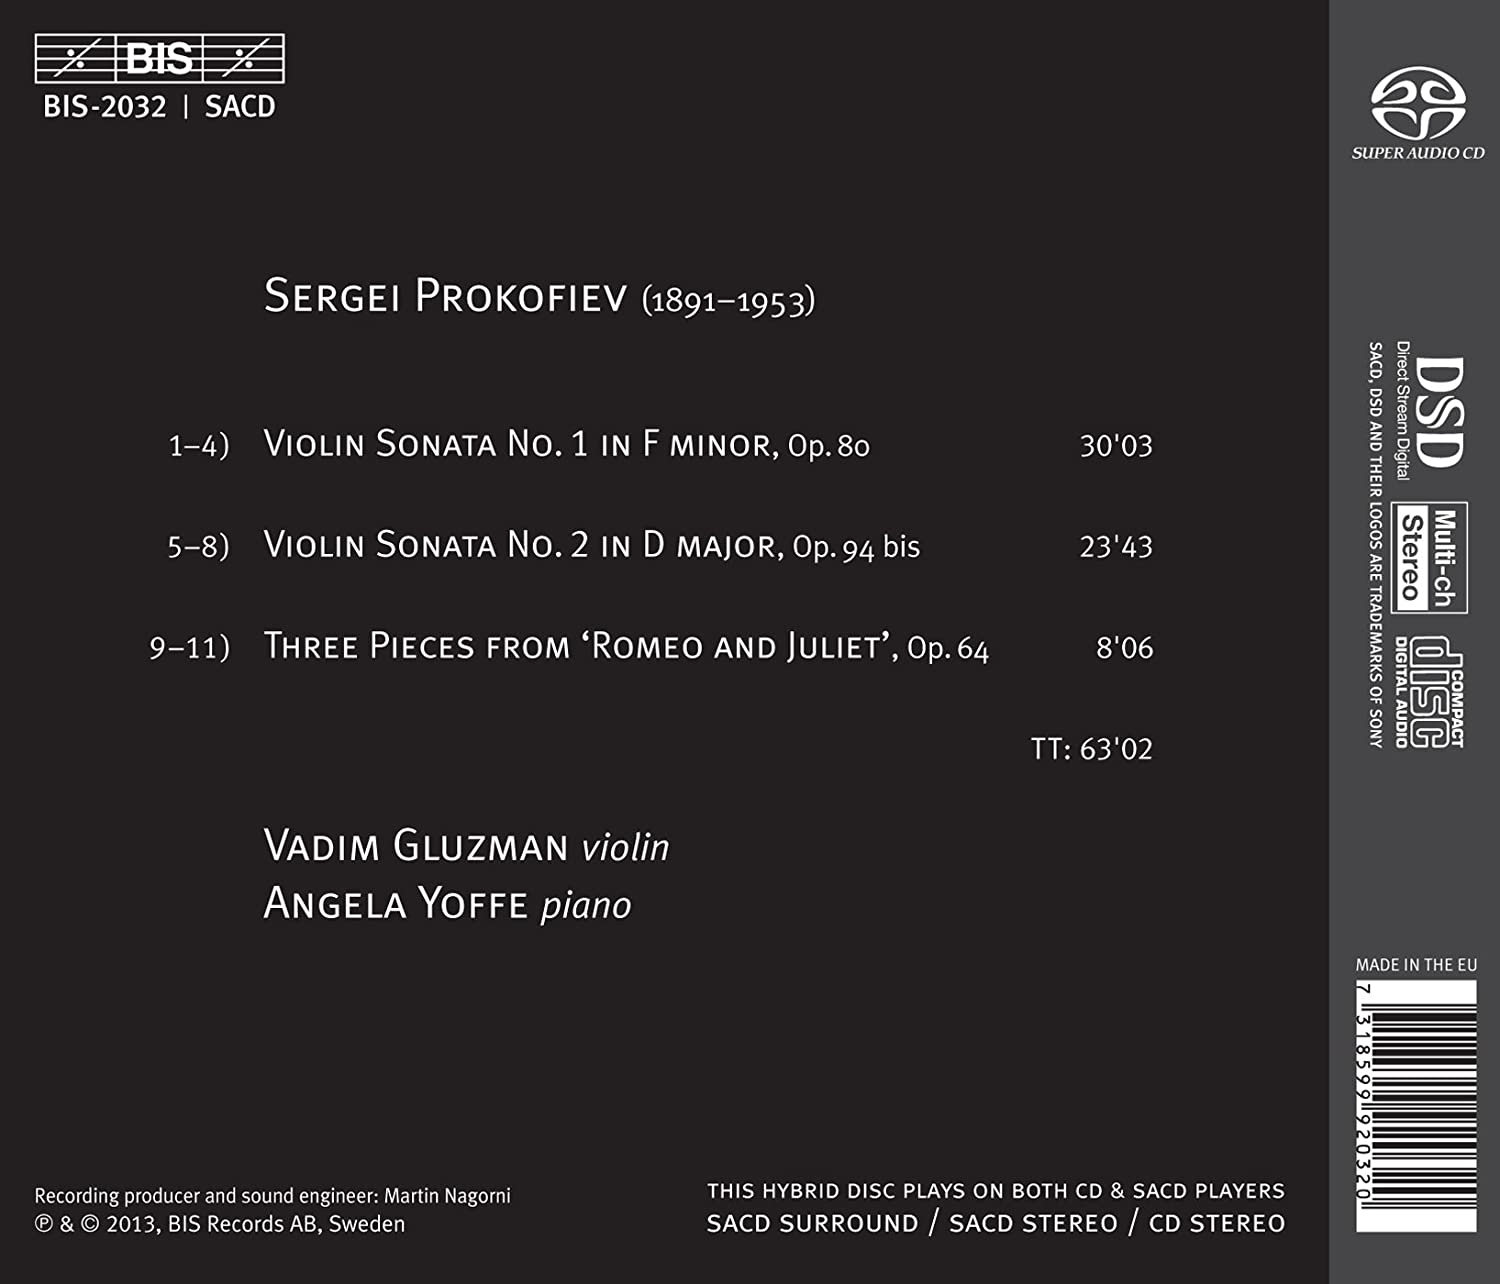 Vadim Gluzman 프로코피에프: 바이올린 소나타 1번, 로미오와 줄리엣 모음곡 (Prokofiev: Violin Sonatas, 3 Pieces from Romeo & Juliet) 